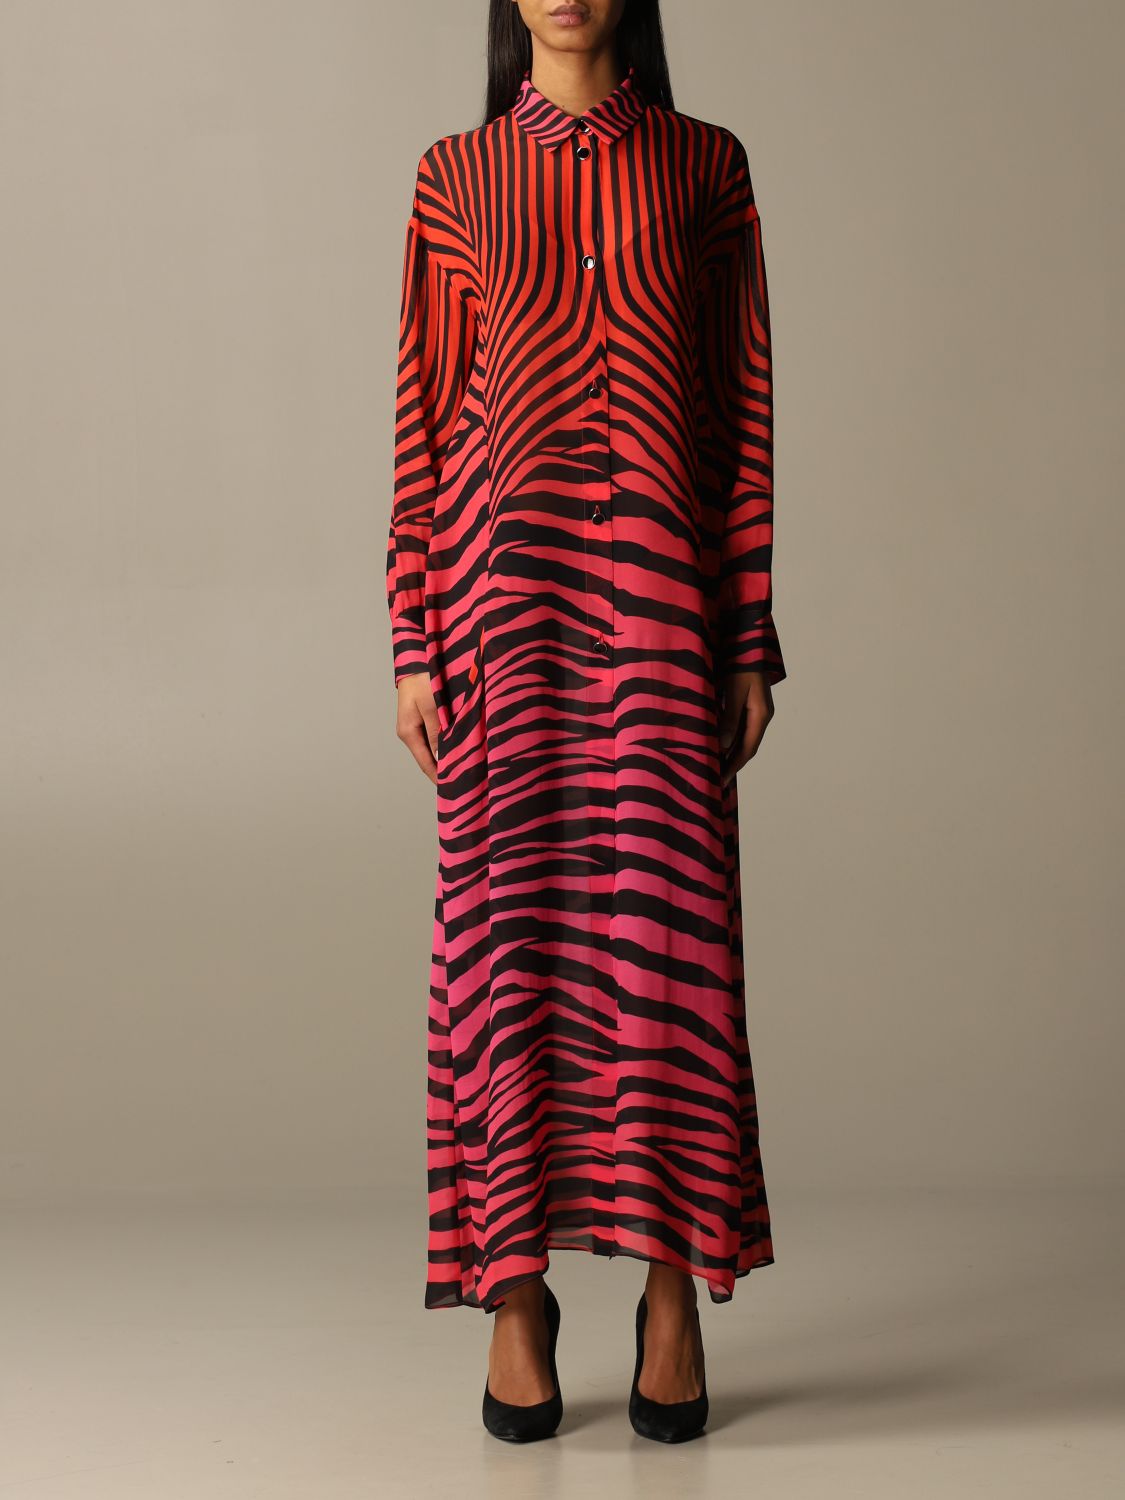 Verzamelen vervangen diefstal Just Cavalli Outlet: animal print long dress - Violet | Just Cavalli dress  S02DL0270 N39554 online on GIGLIO.COM